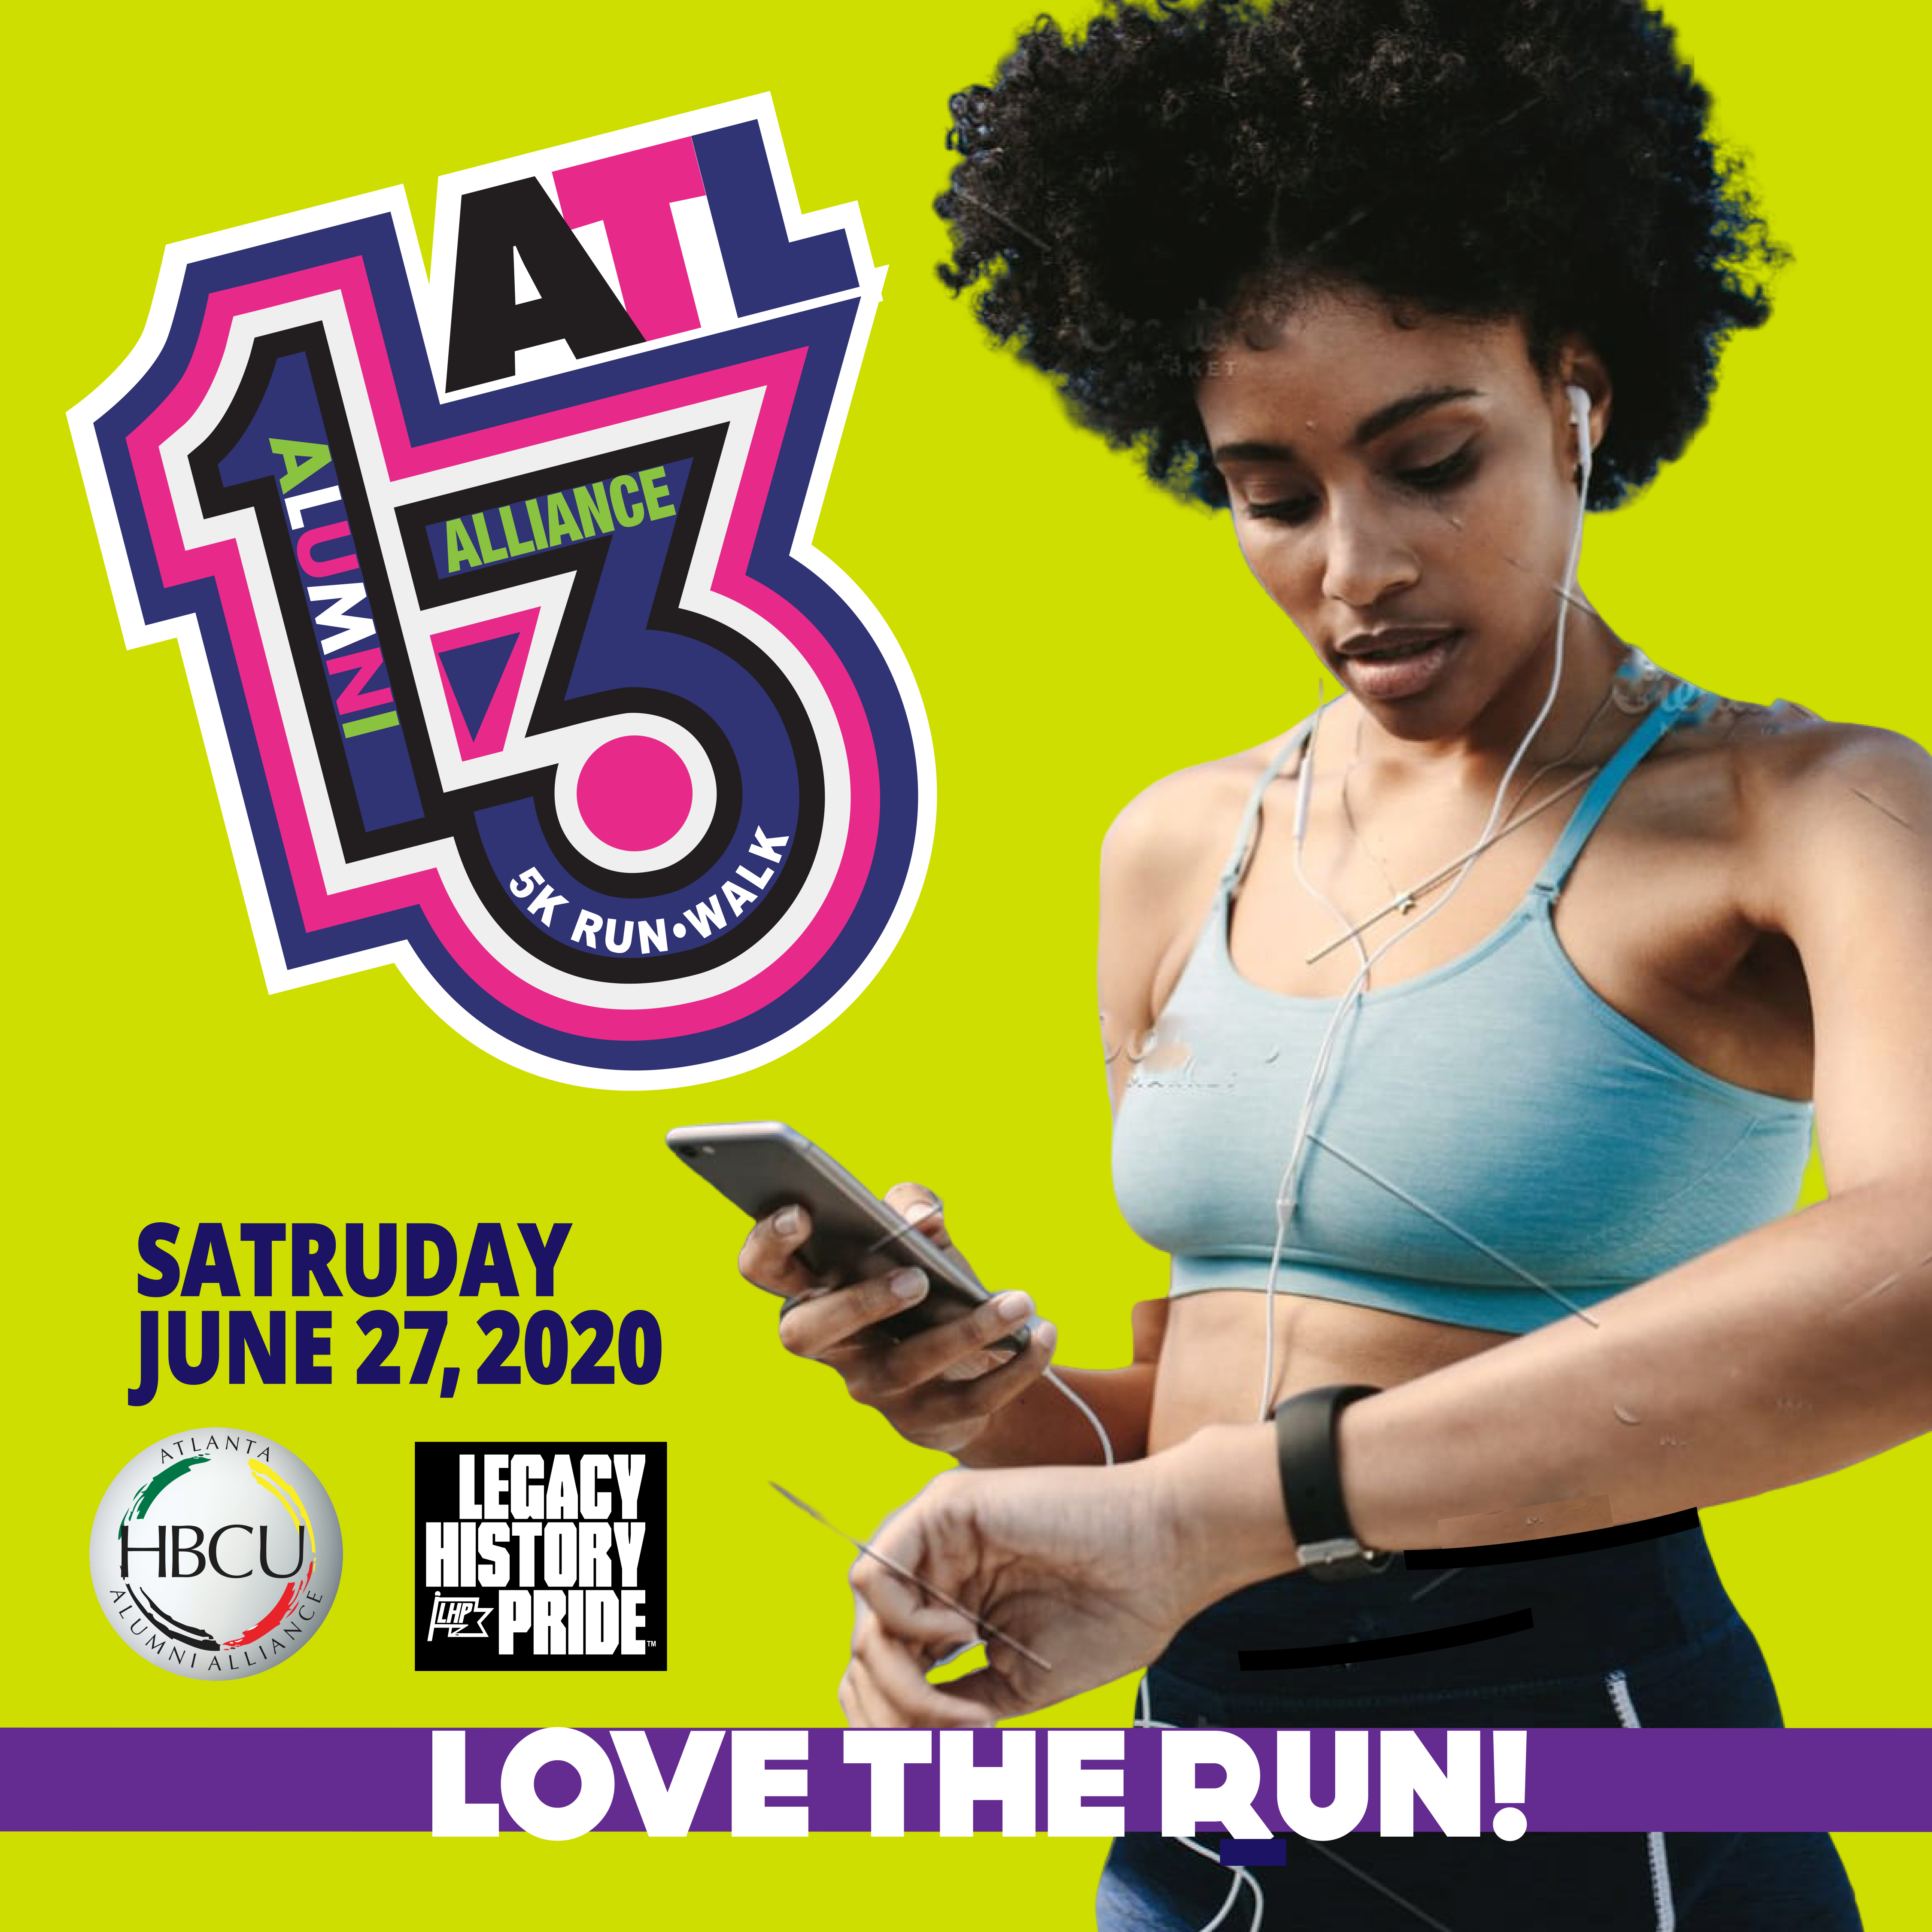 5k Run Walk HBCU Atlanta